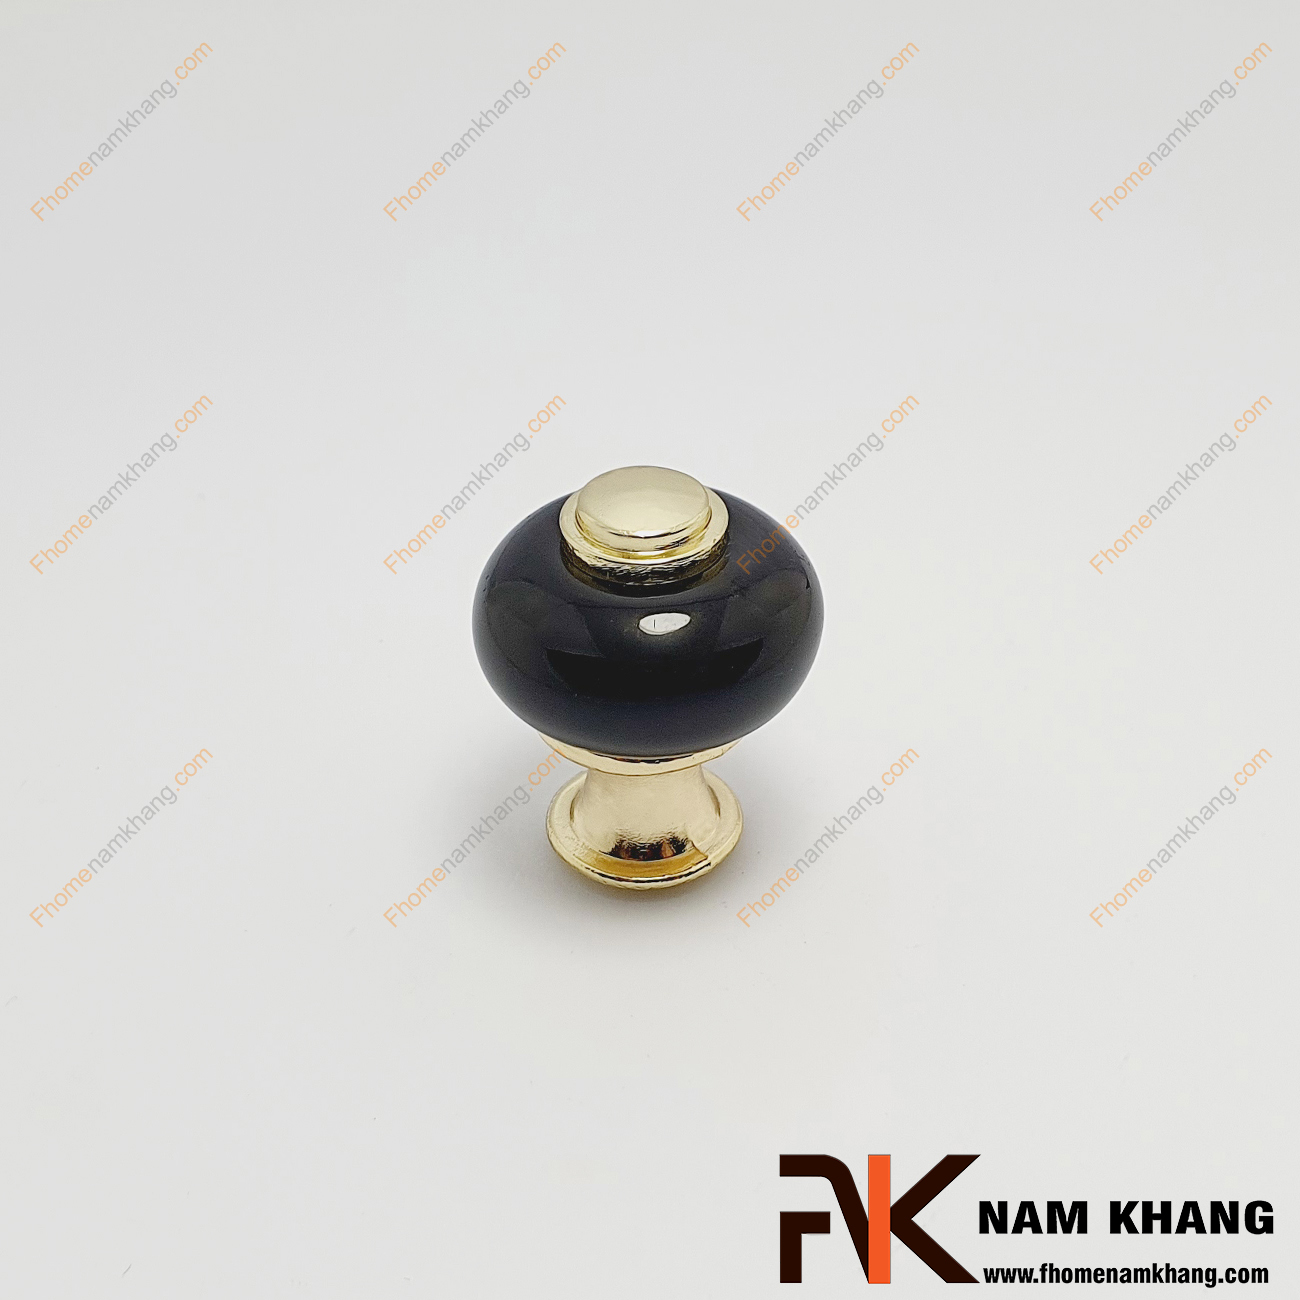 Núm cửa tủ sứ đen chân vàng NK338-VD có khuôn dạng nấm được phối hợp từ sứ cao cấp và phần lõi hợp kim mạ vàng bóng độc đáo.